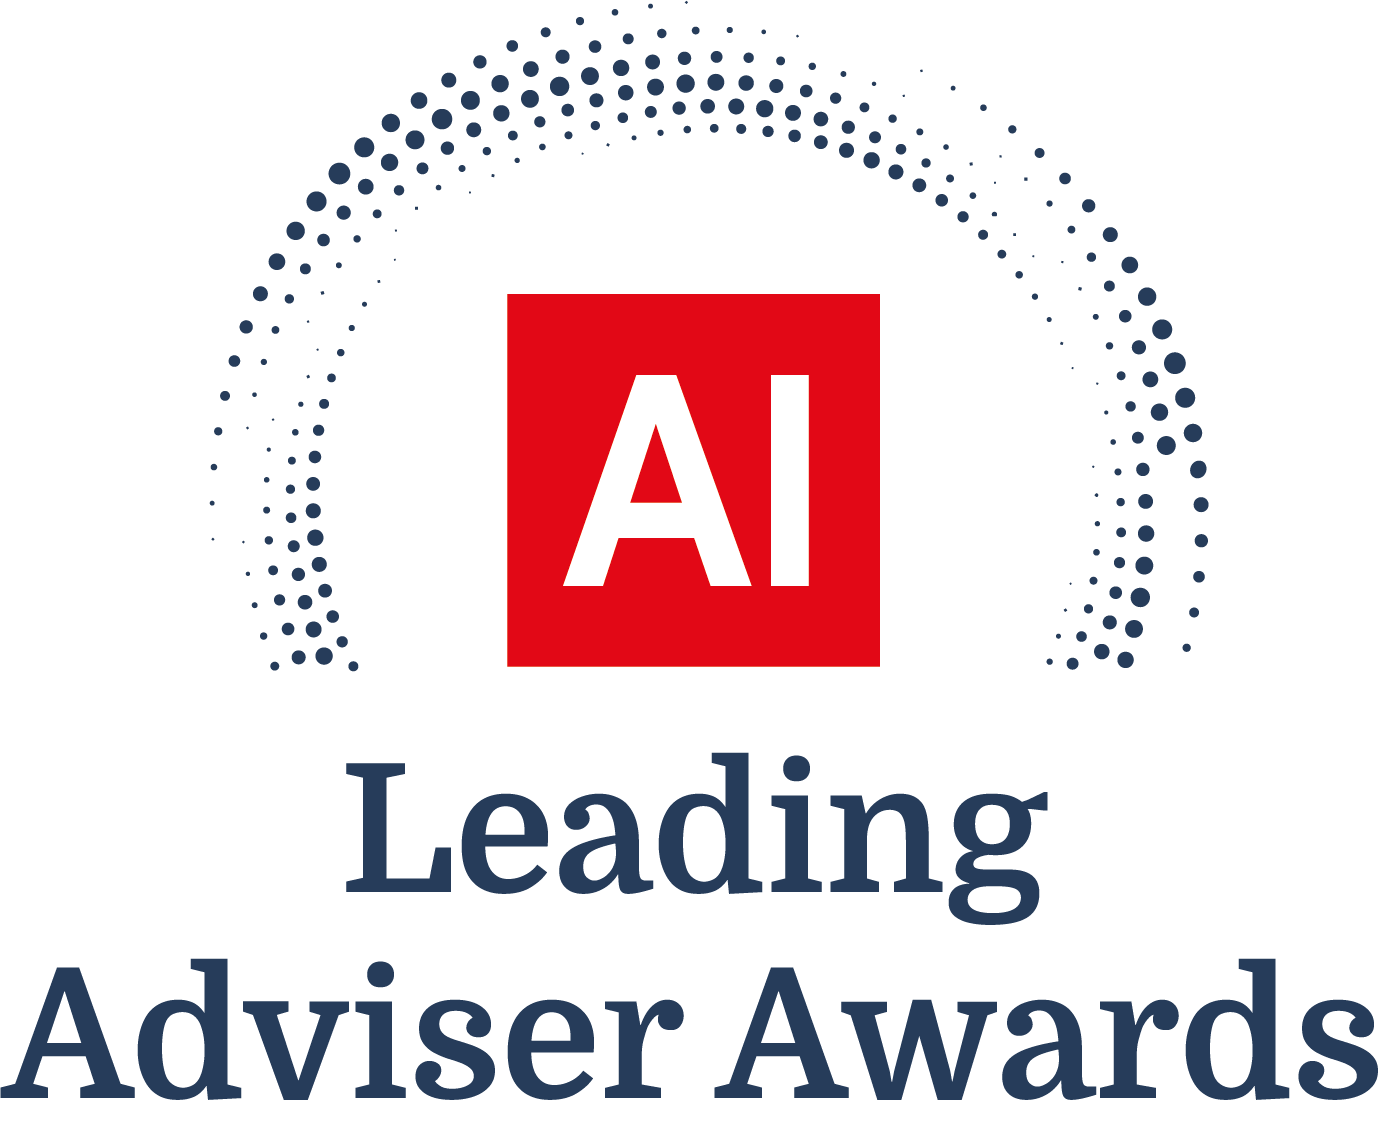 Award Logo - Leading Adviser Awards